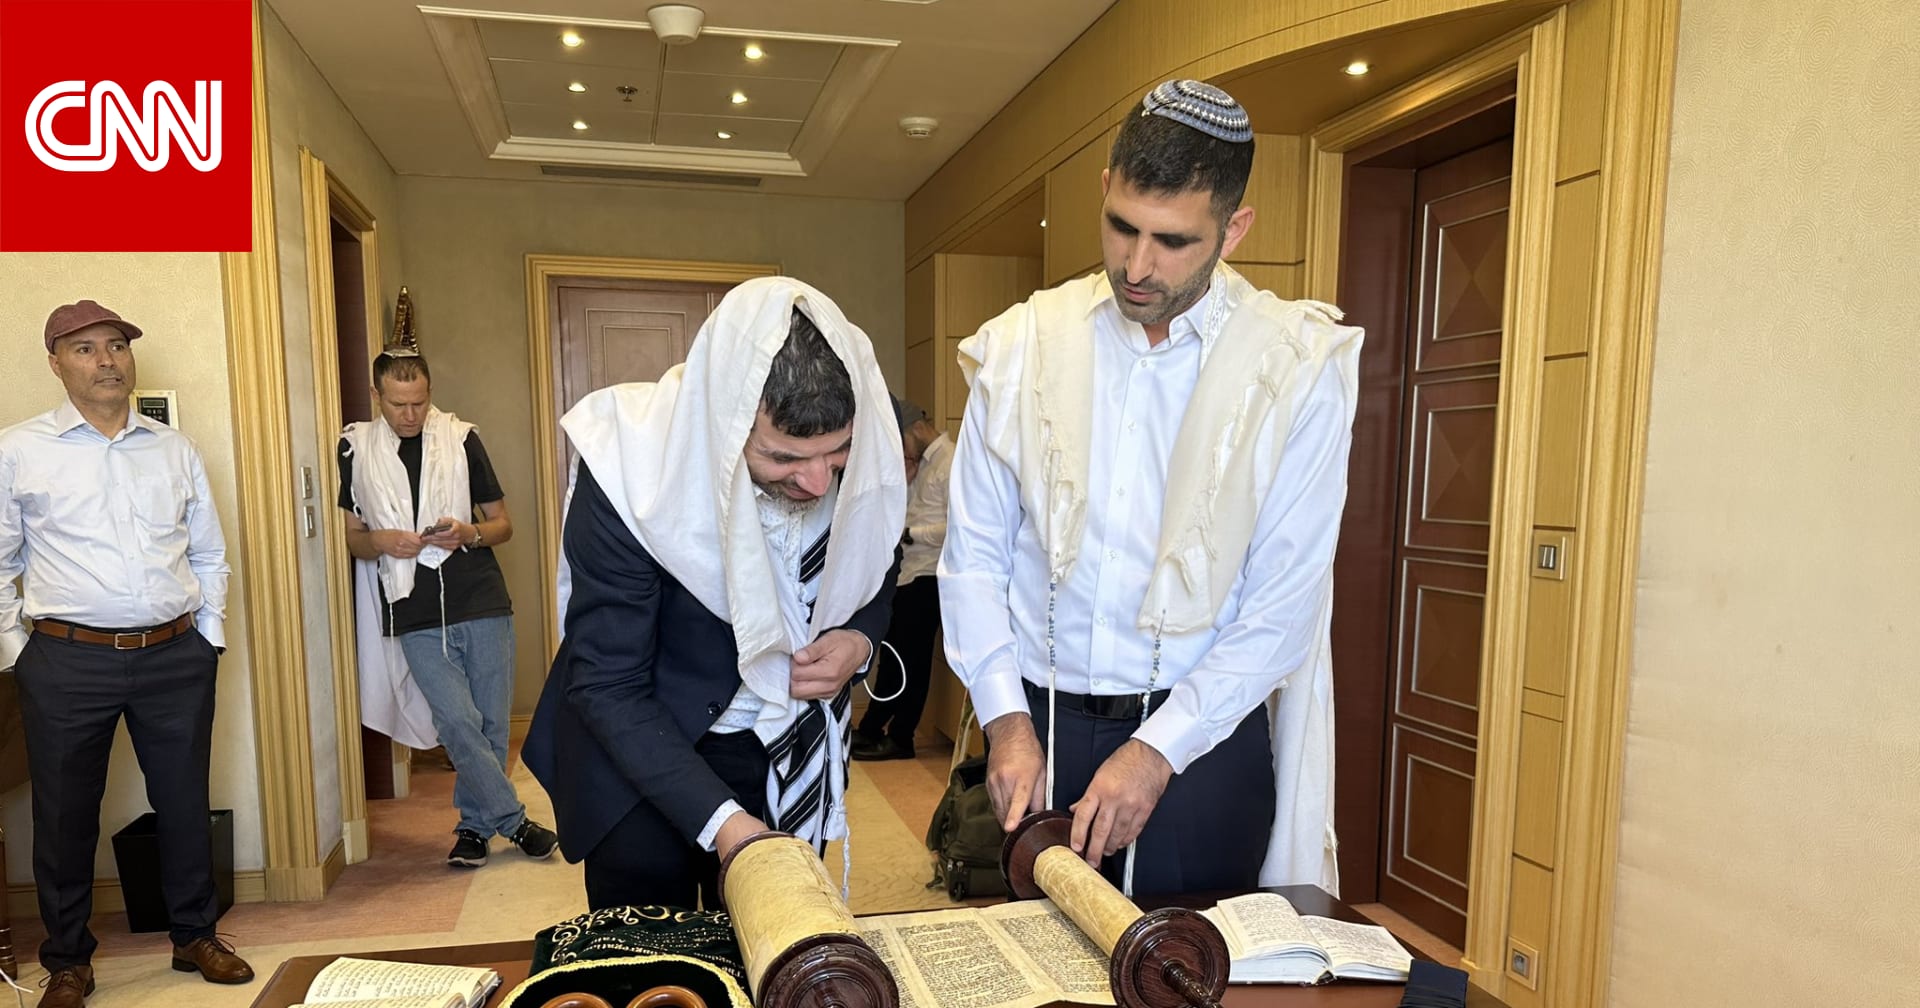 Israeli Minister Holds Jewish Prayer Service in Saudi Arabia, Celebrating Sukkot